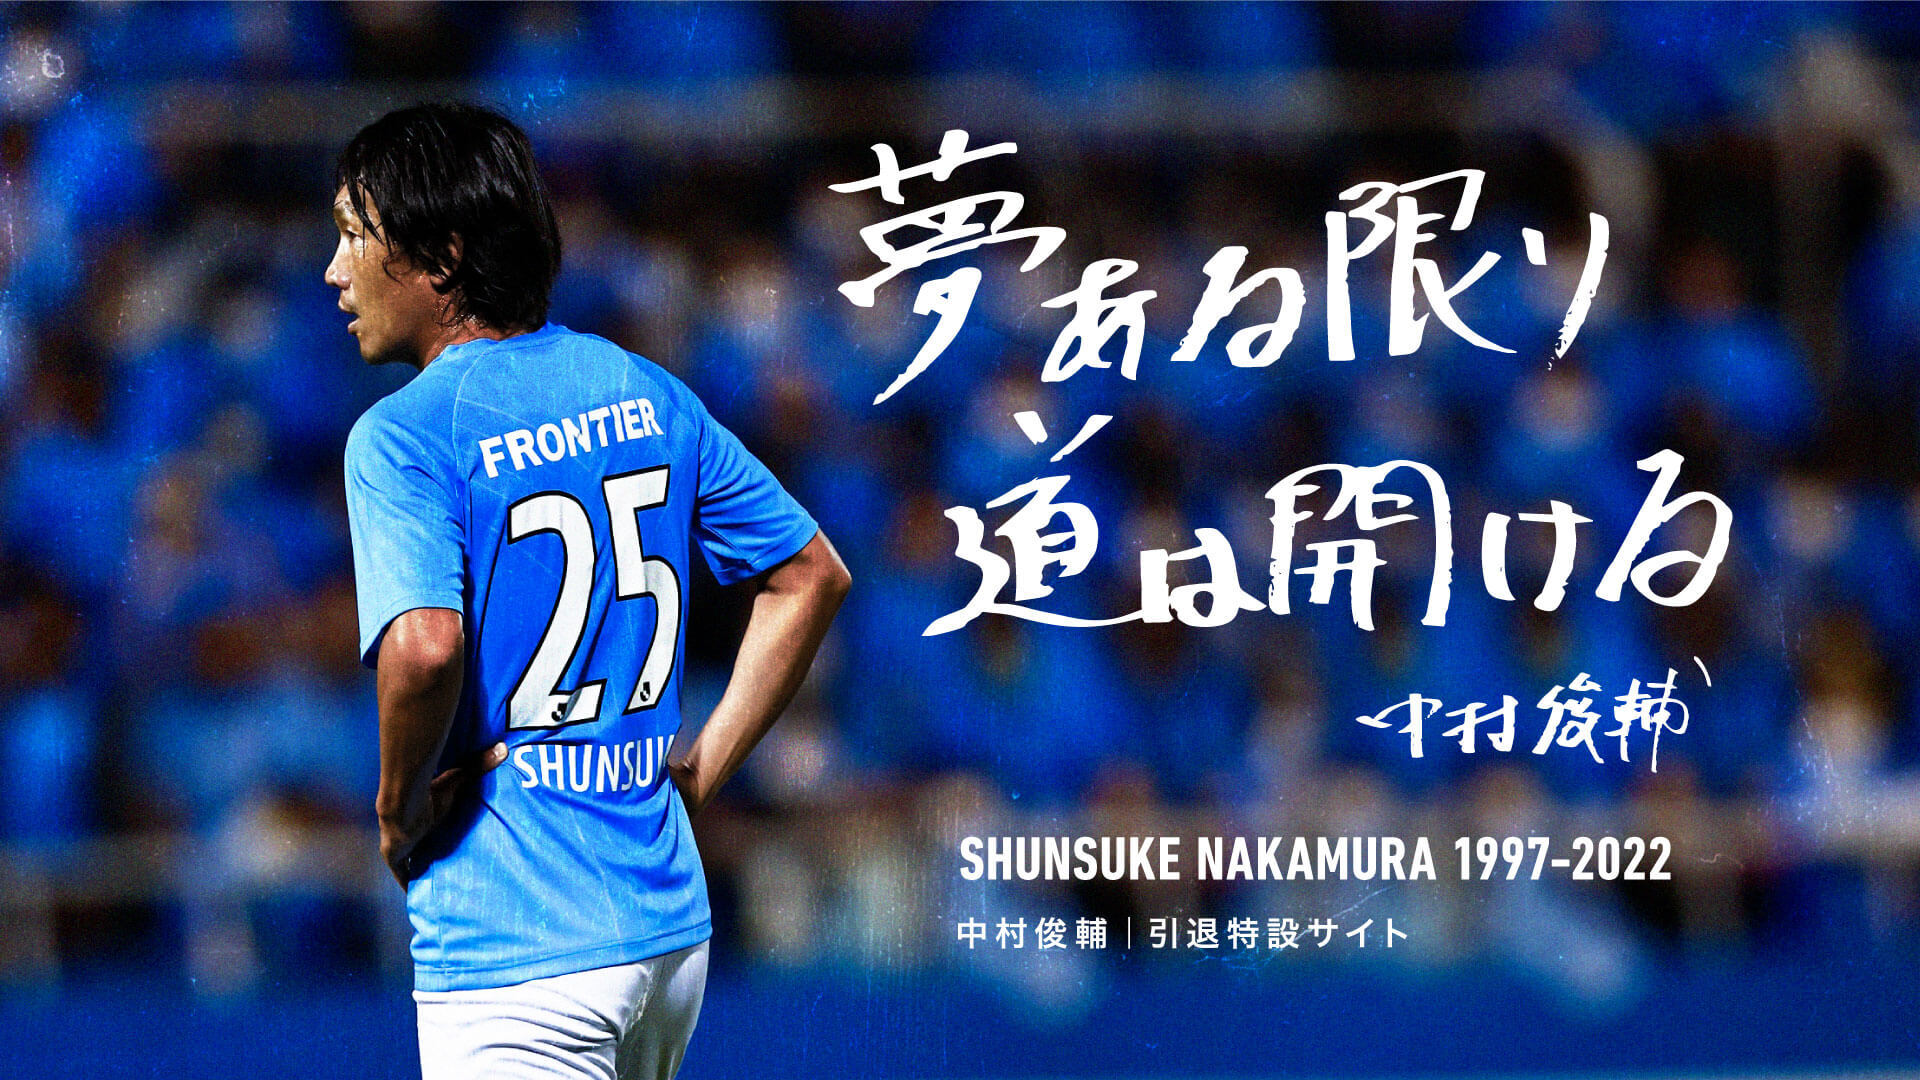 中村俊輔 引退特設サイト | 横浜FCオフィシャルウェブサイト